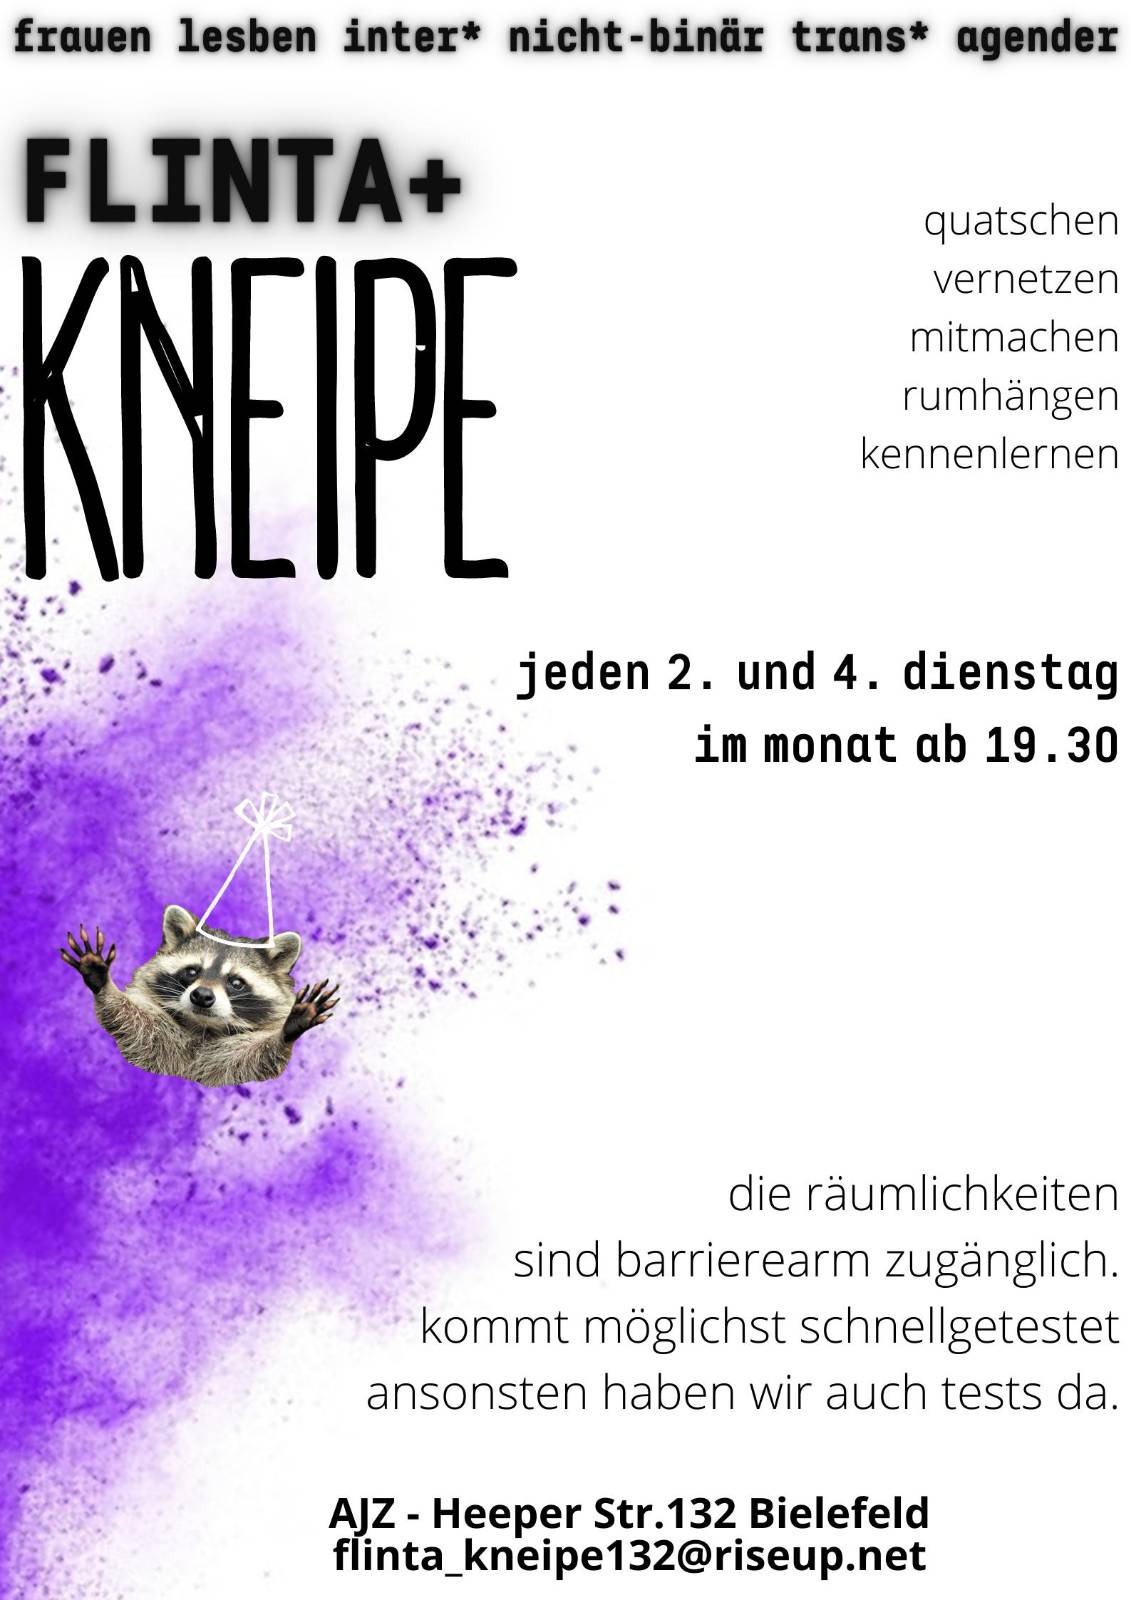 FLINTA+ Kneipe - WINTERPAUSE bis zum 14.02